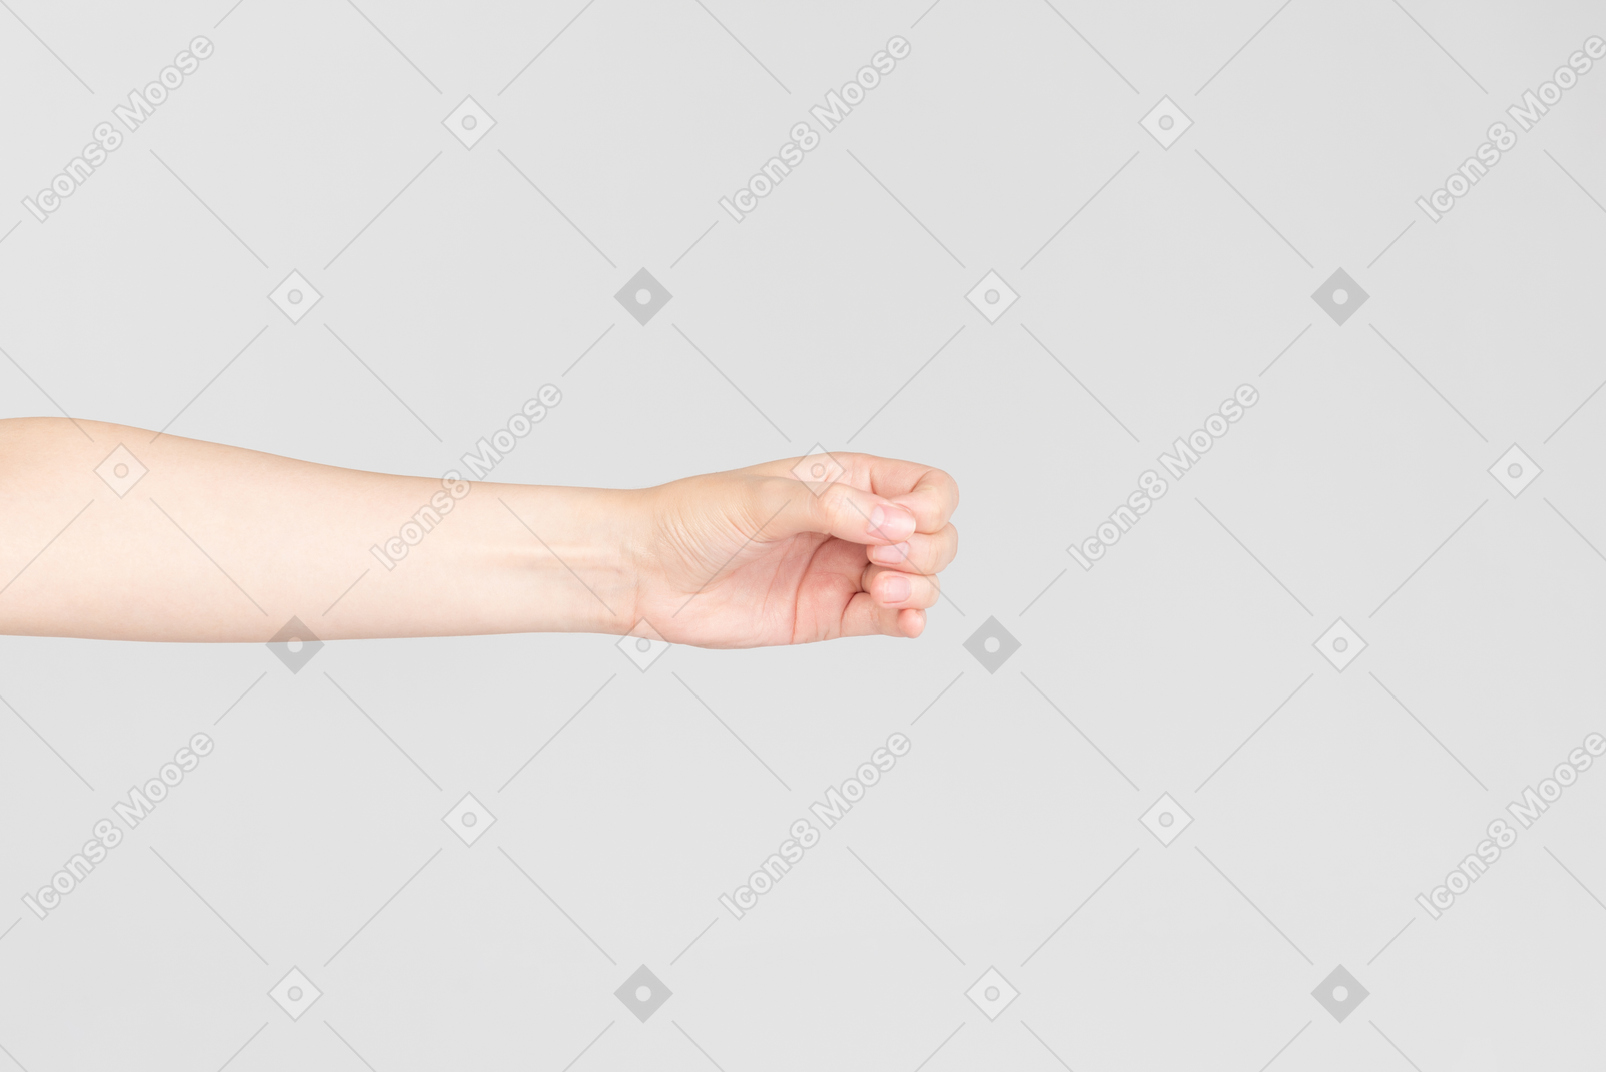 Sguardo laterale della mano femminile facendo un cerchio con una mano